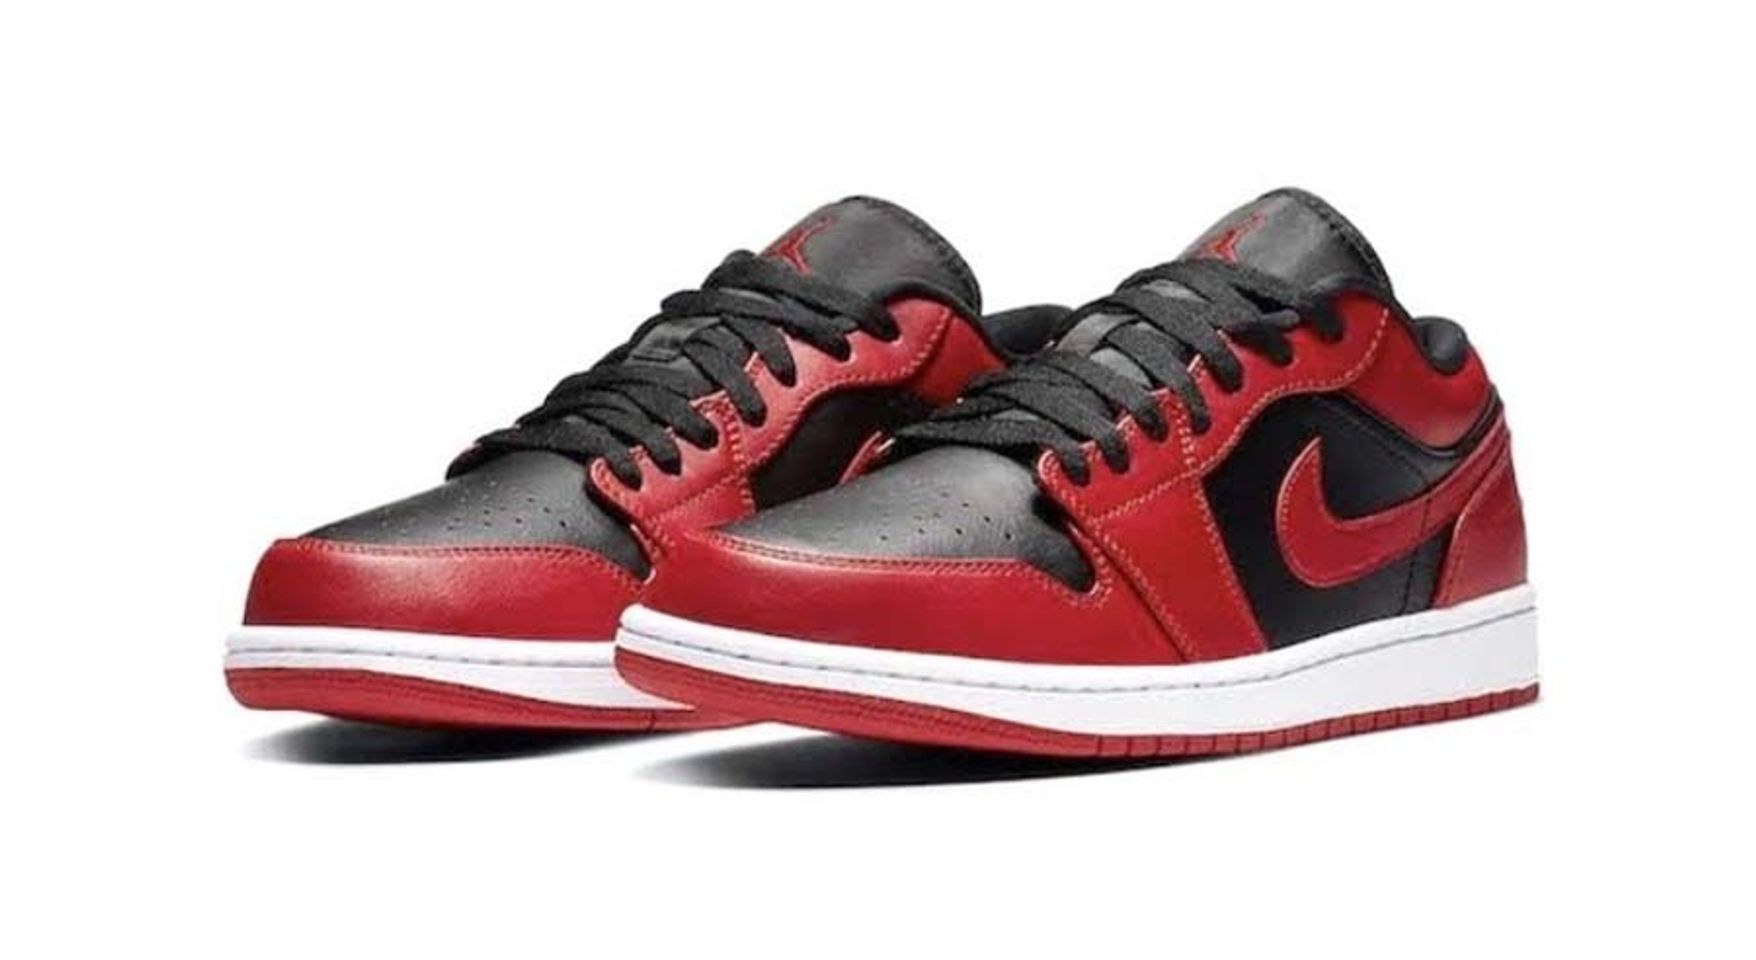 Giày thể thao Nike Air Jordan 1 Low Reverse Bred màu đỏ